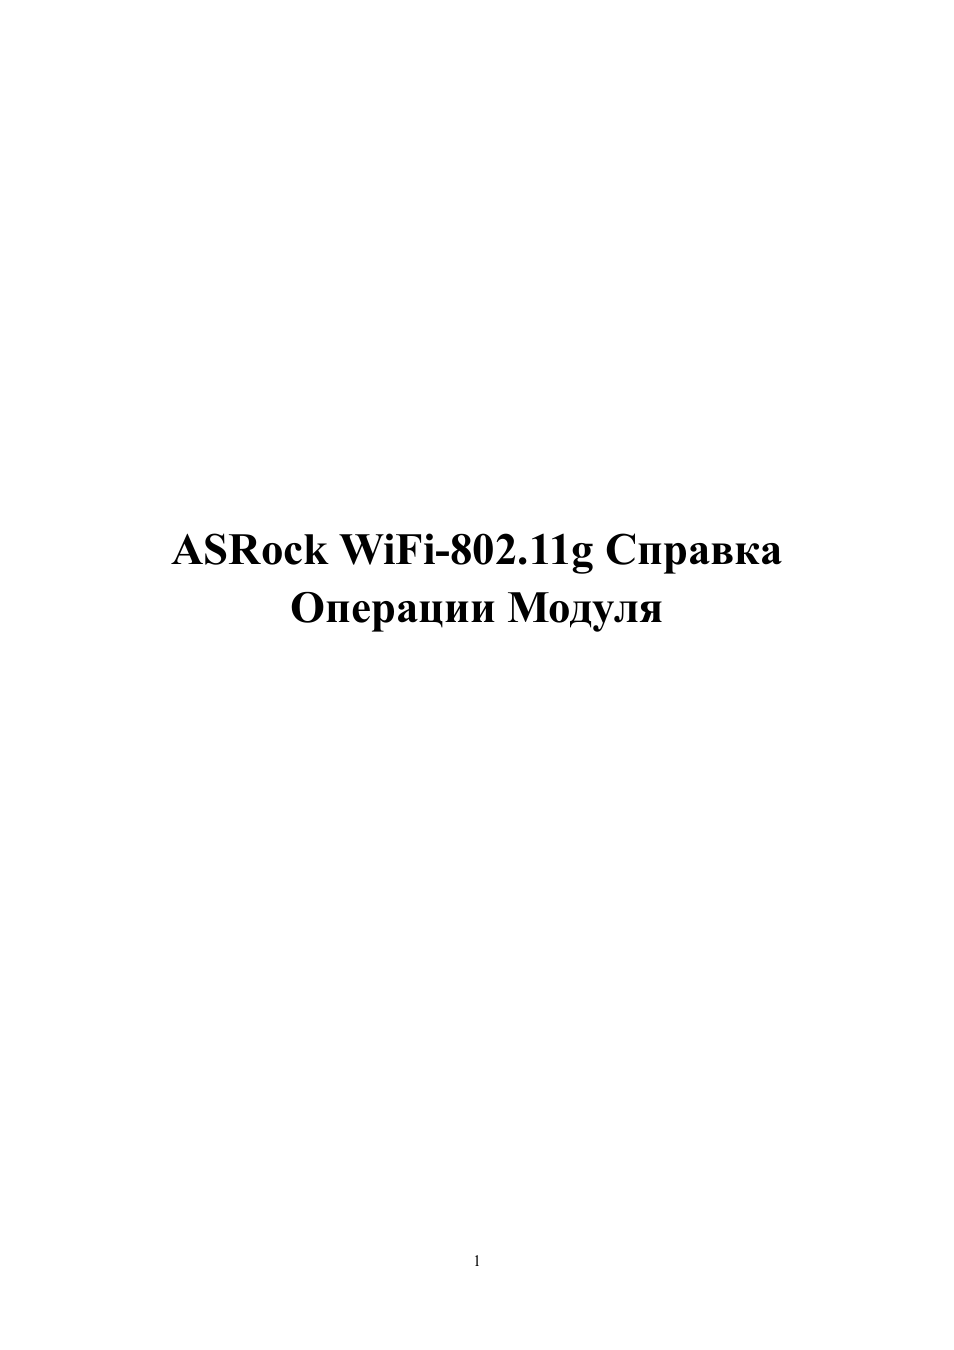 Инструкция по эксплуатации ASRock WiFi-802.11g Module | 35 страниц